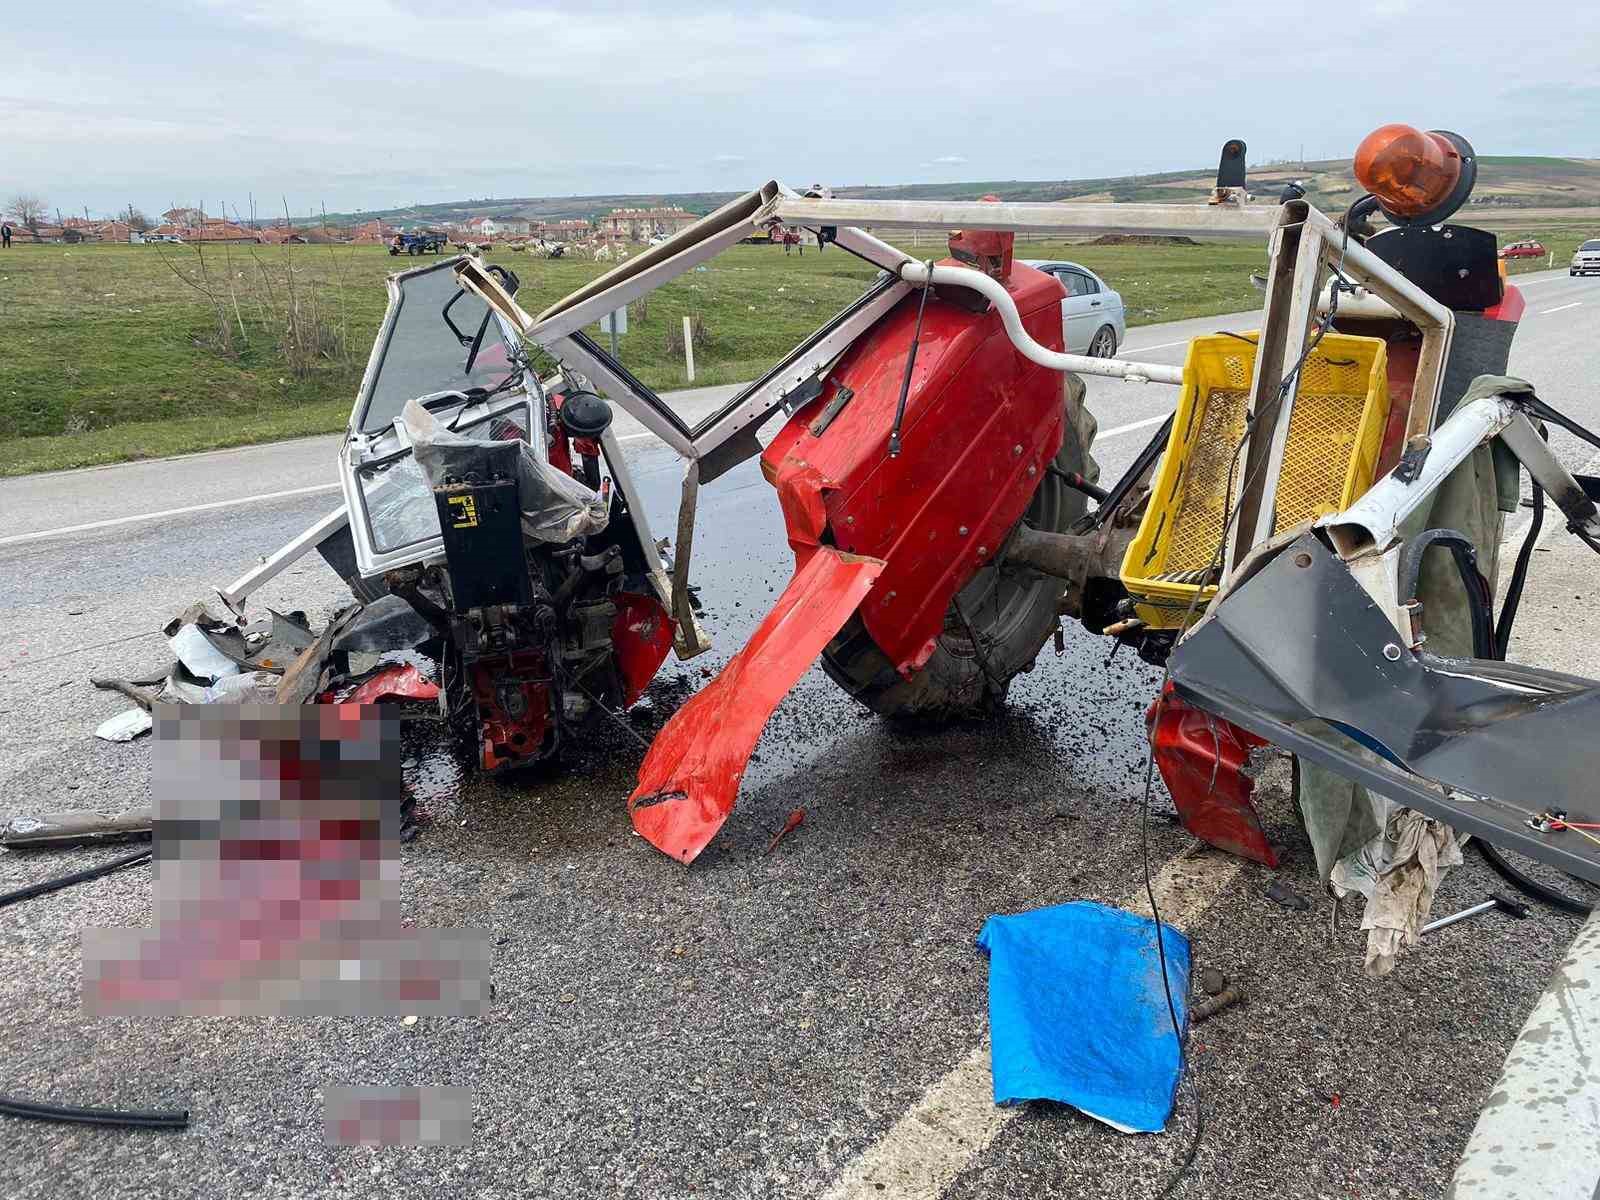 Edirne’de kazada ortadan ikiye bölünen traktör sürücüsü feci şekilde can verdi
